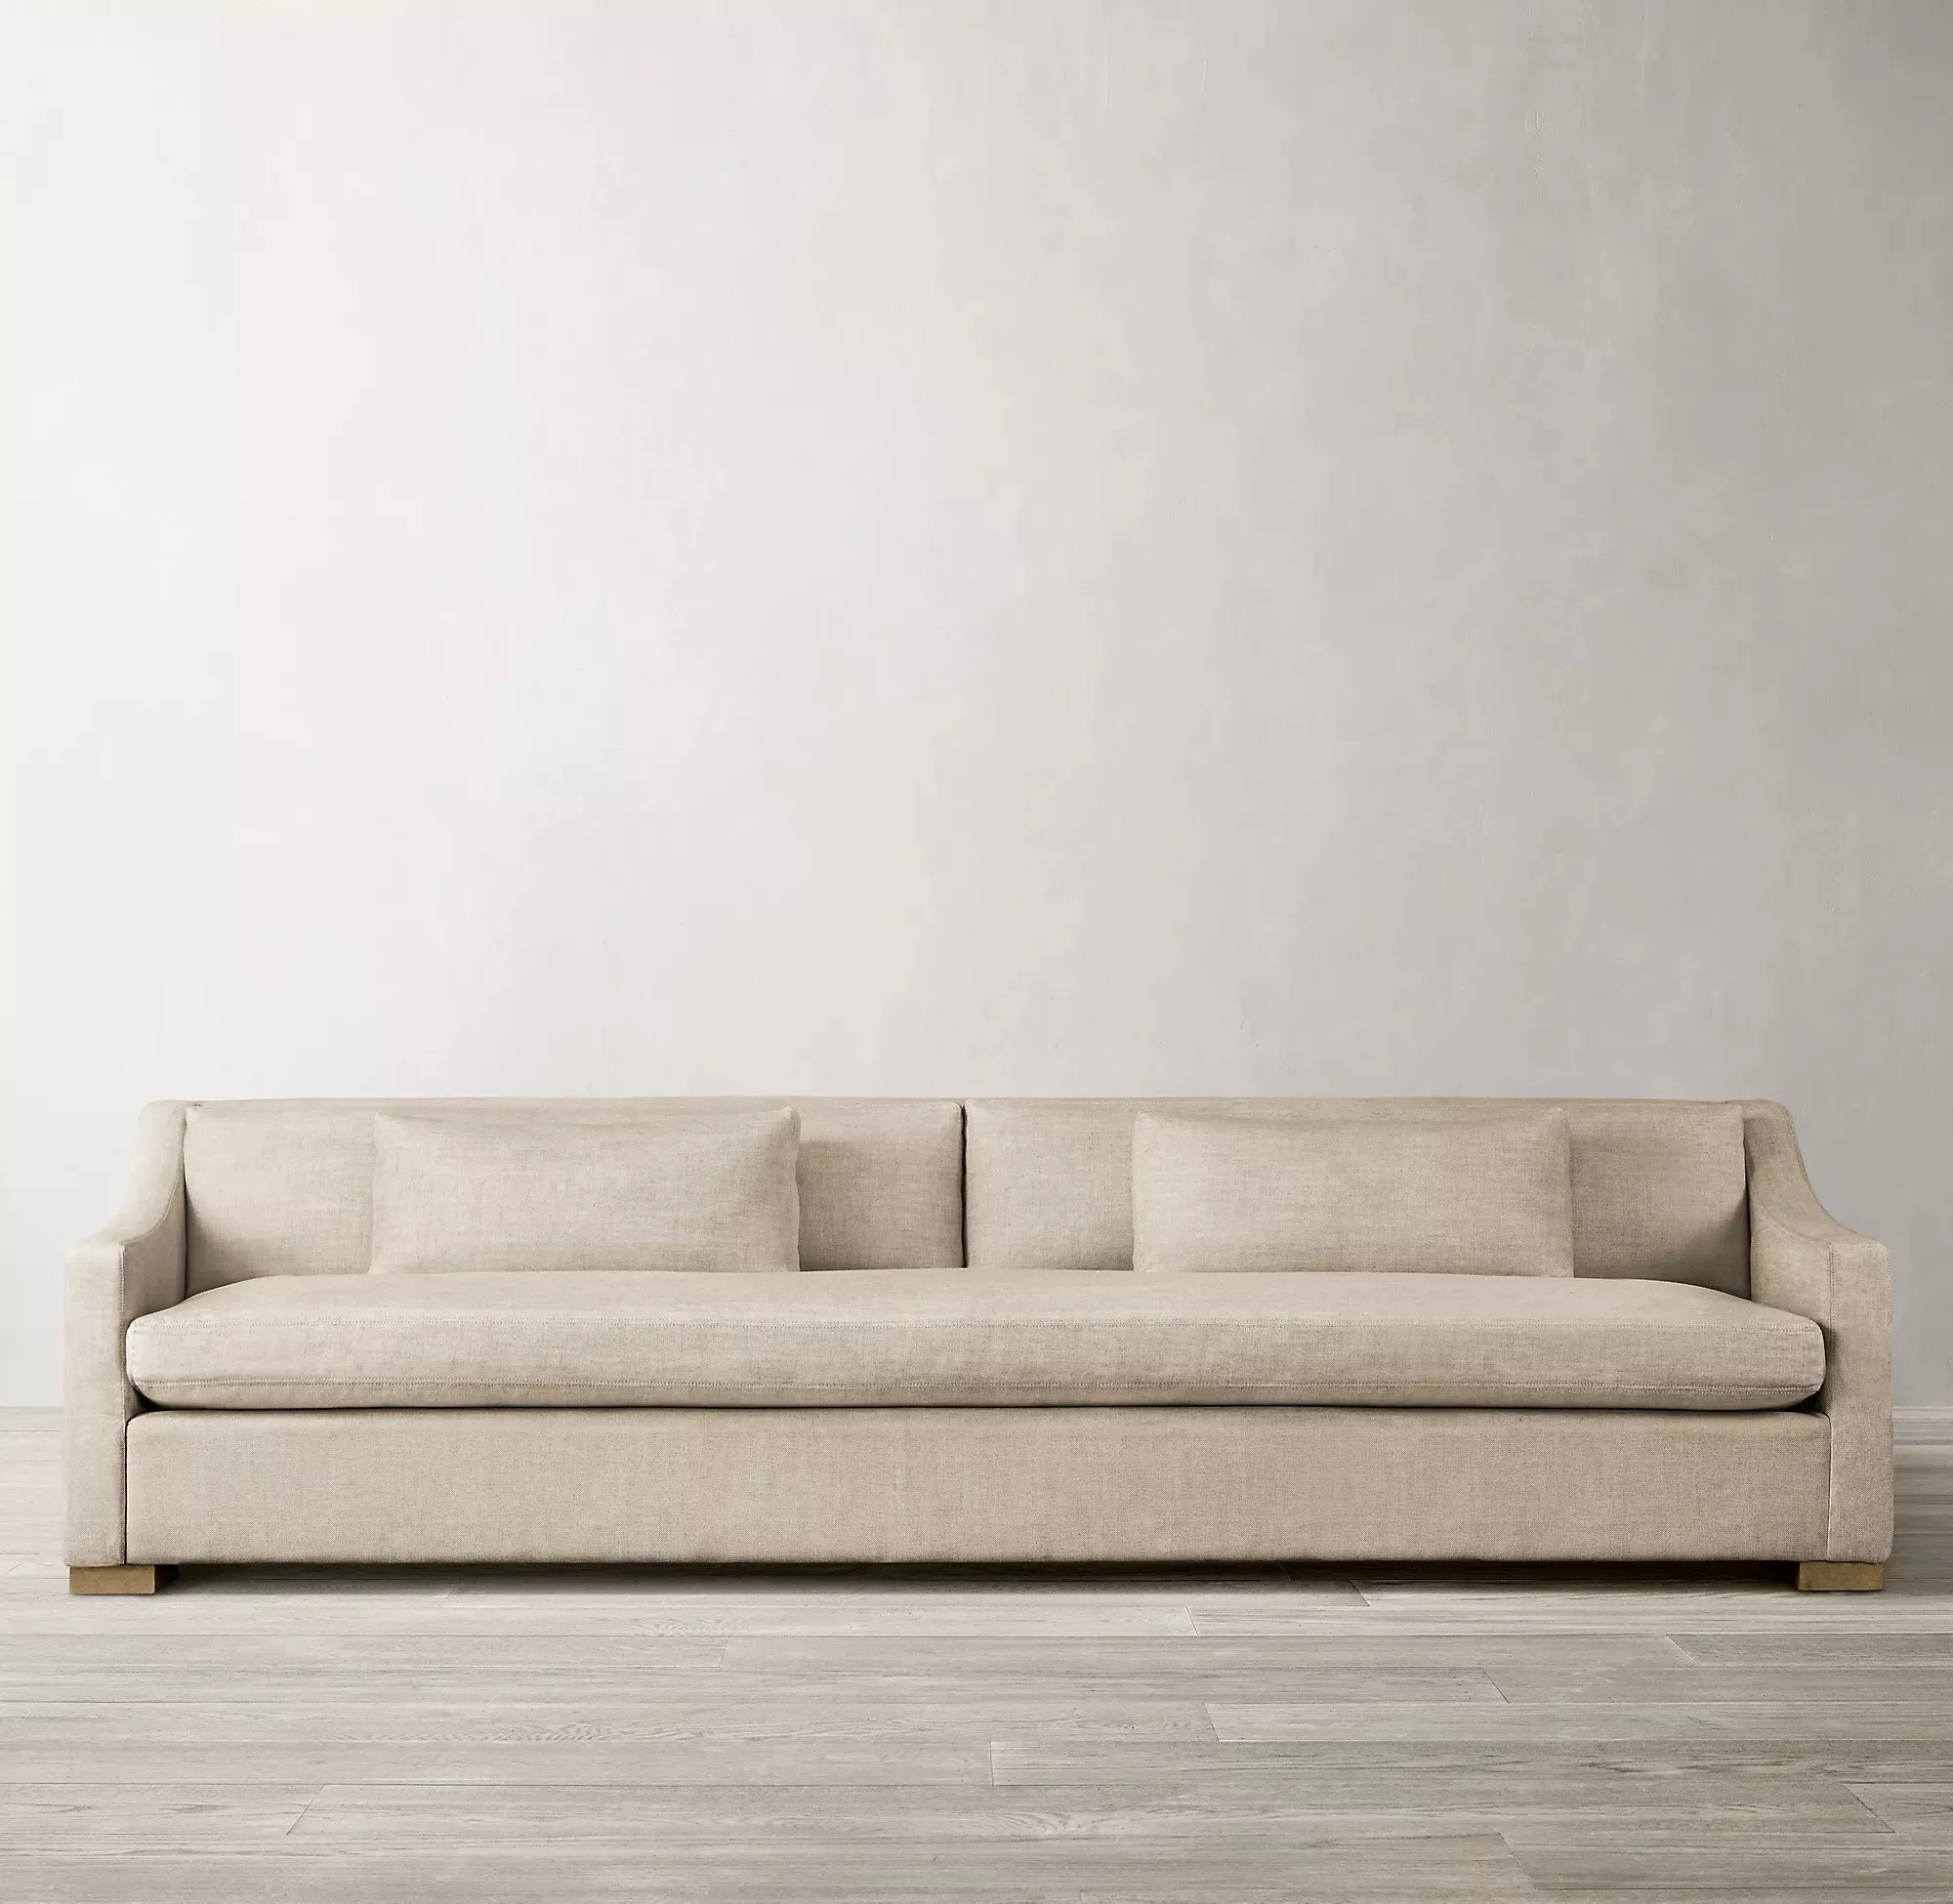 Fabbrica di vendita calda per interni moderni di lusso soggiorno in tessuto diagonale panca divano set mobili